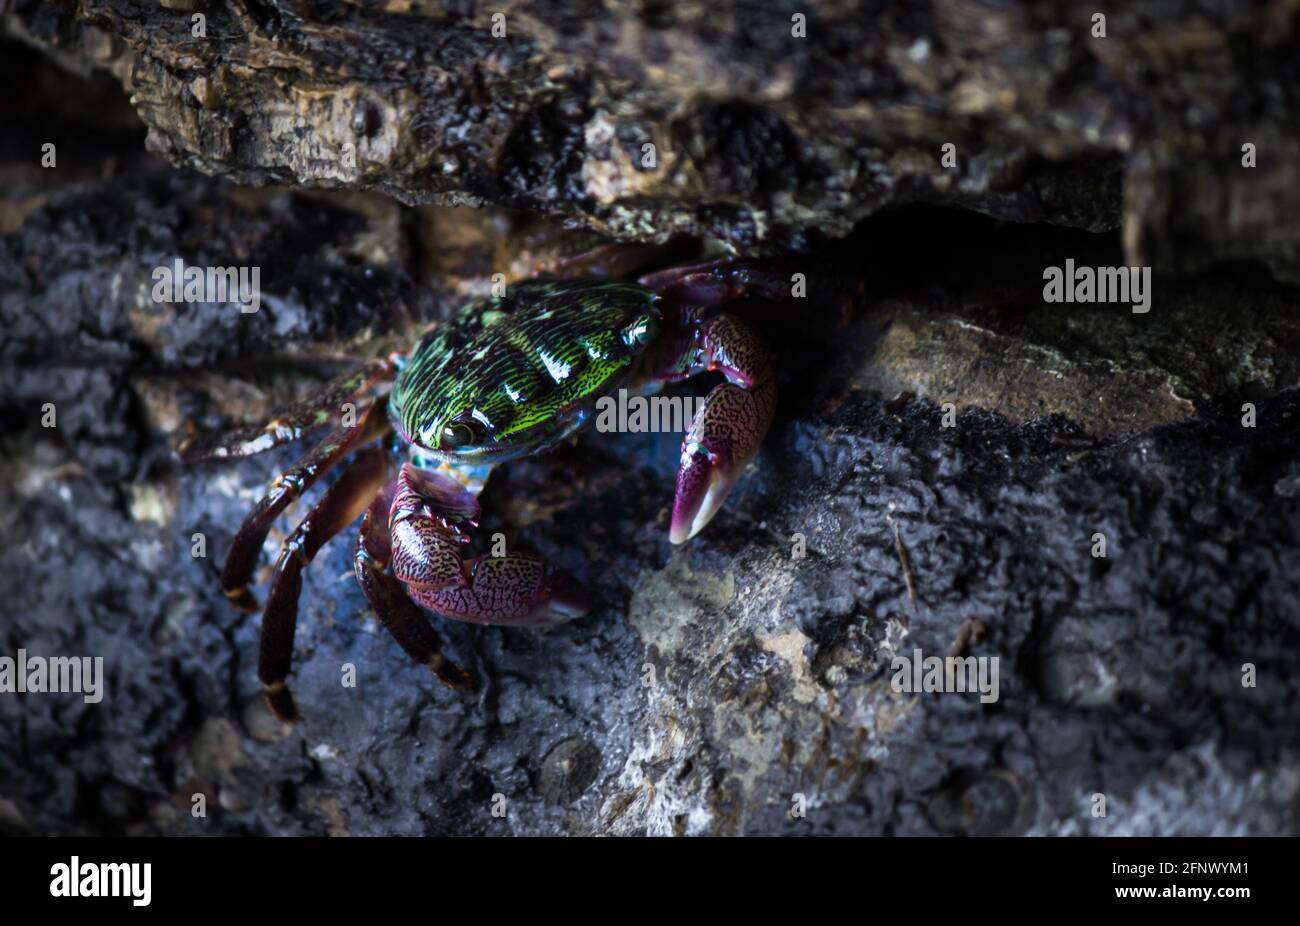 Striped Shoreline Crab Stock Photo